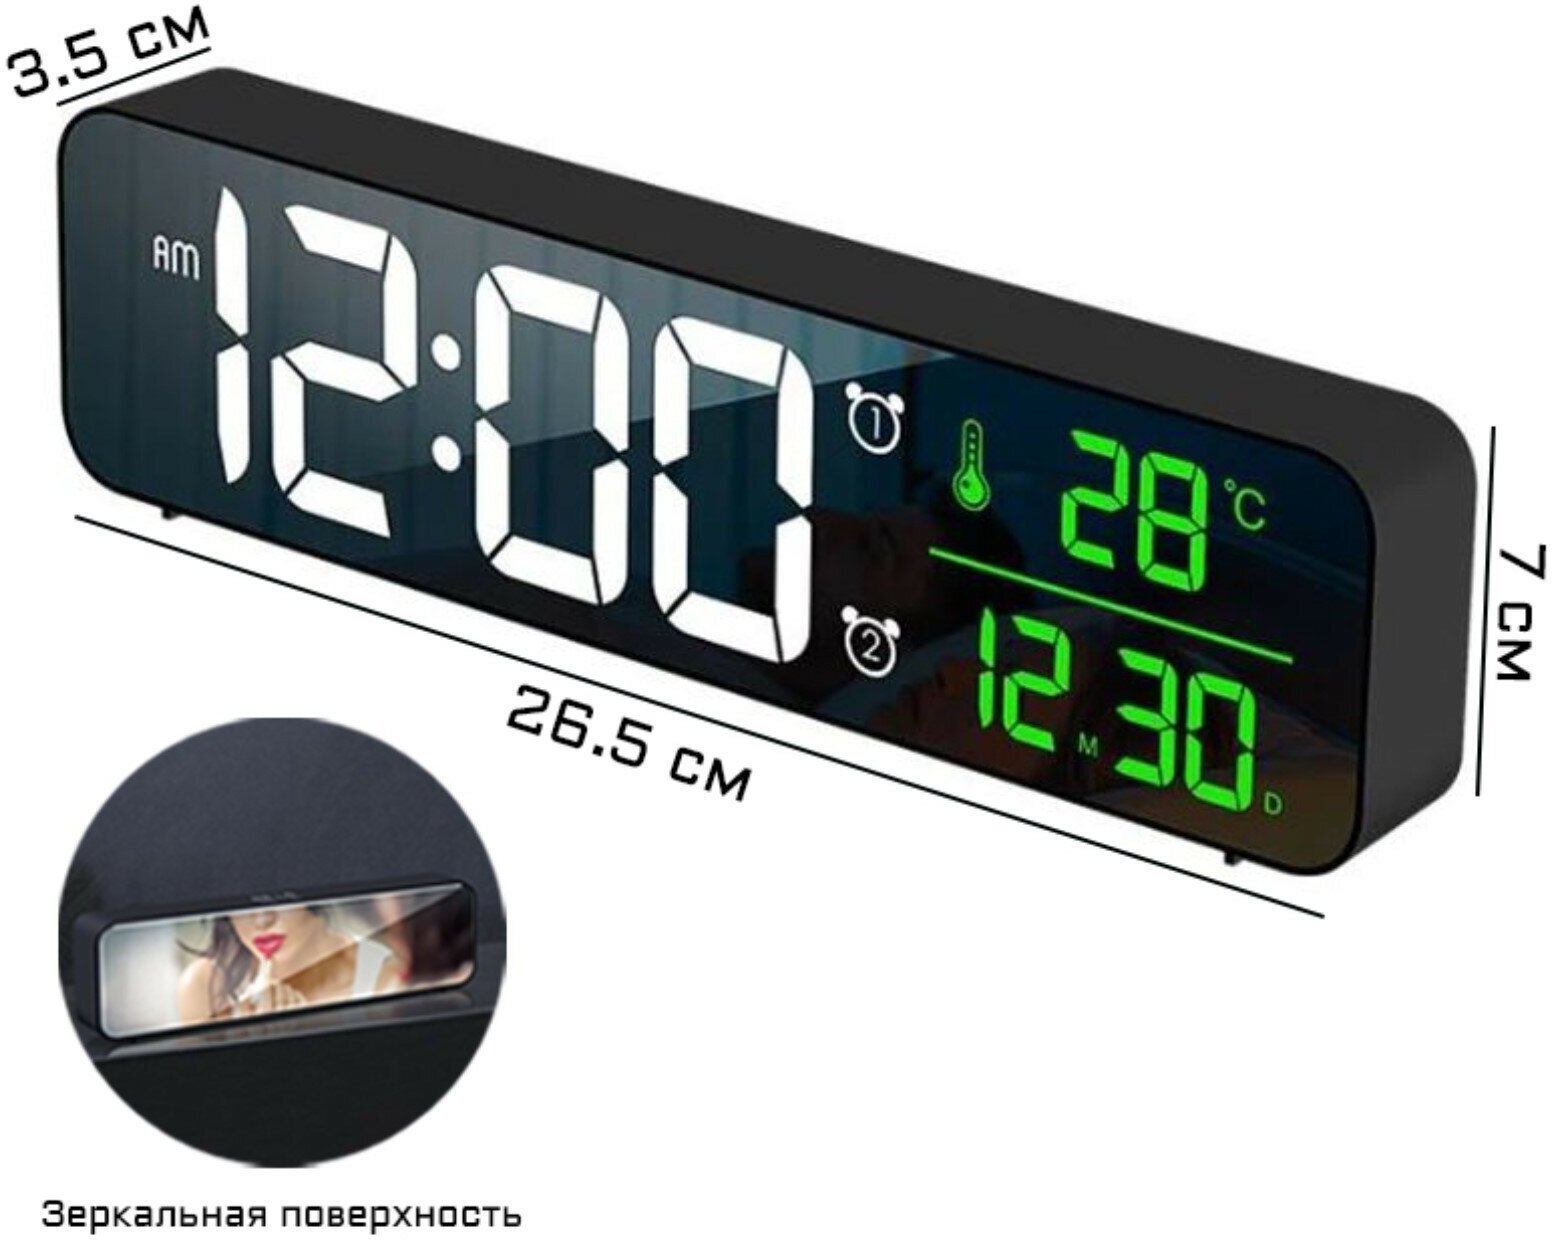 Часы электронные настольные: будильник, календарь, термометр, с подвесом, 3.5 х 7 х 26.5 см